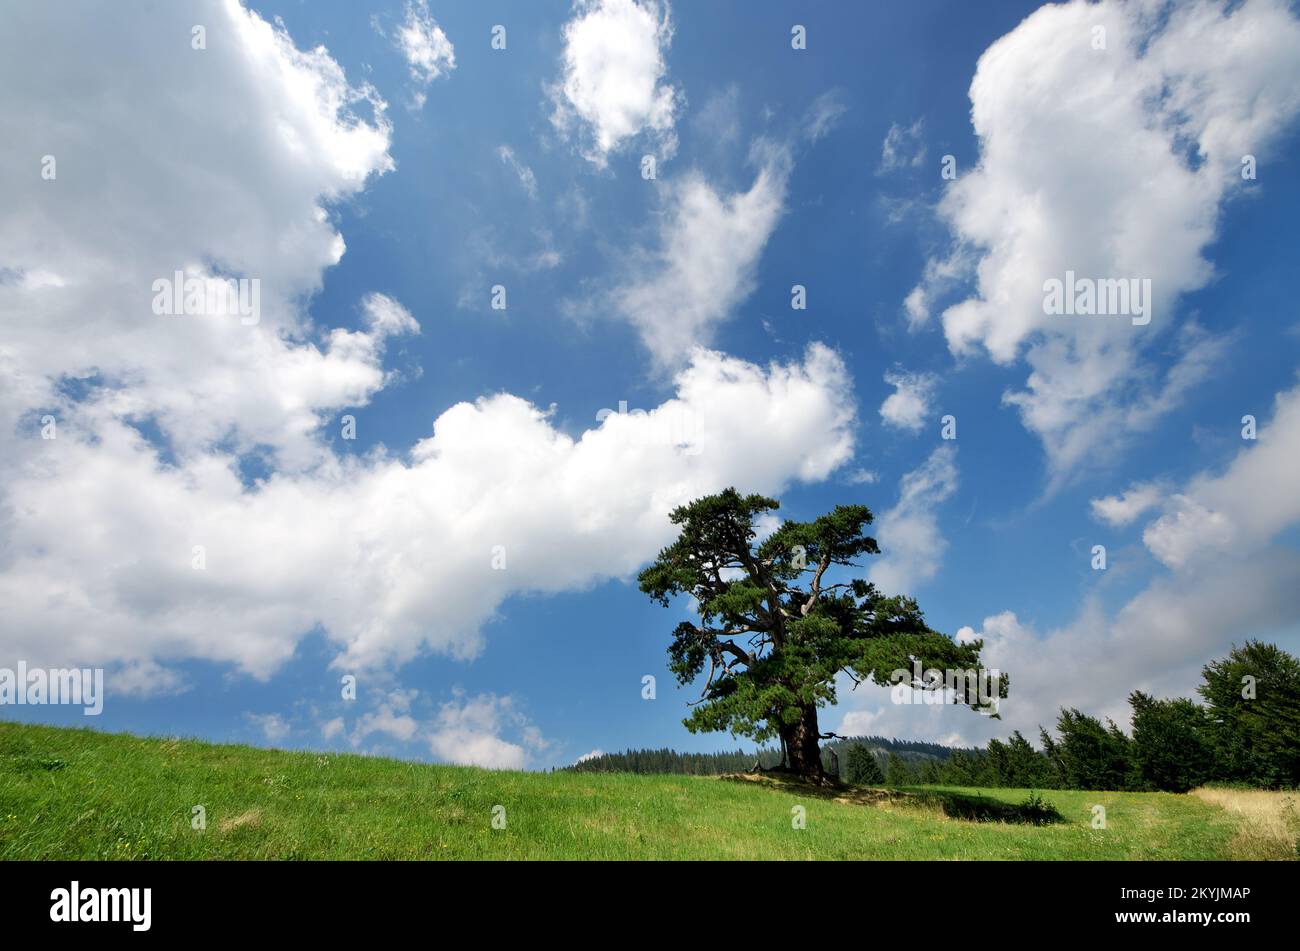 old pine tree 'Sveti Bor' in mountain of Serbia, Kamena Gora Stock Photo